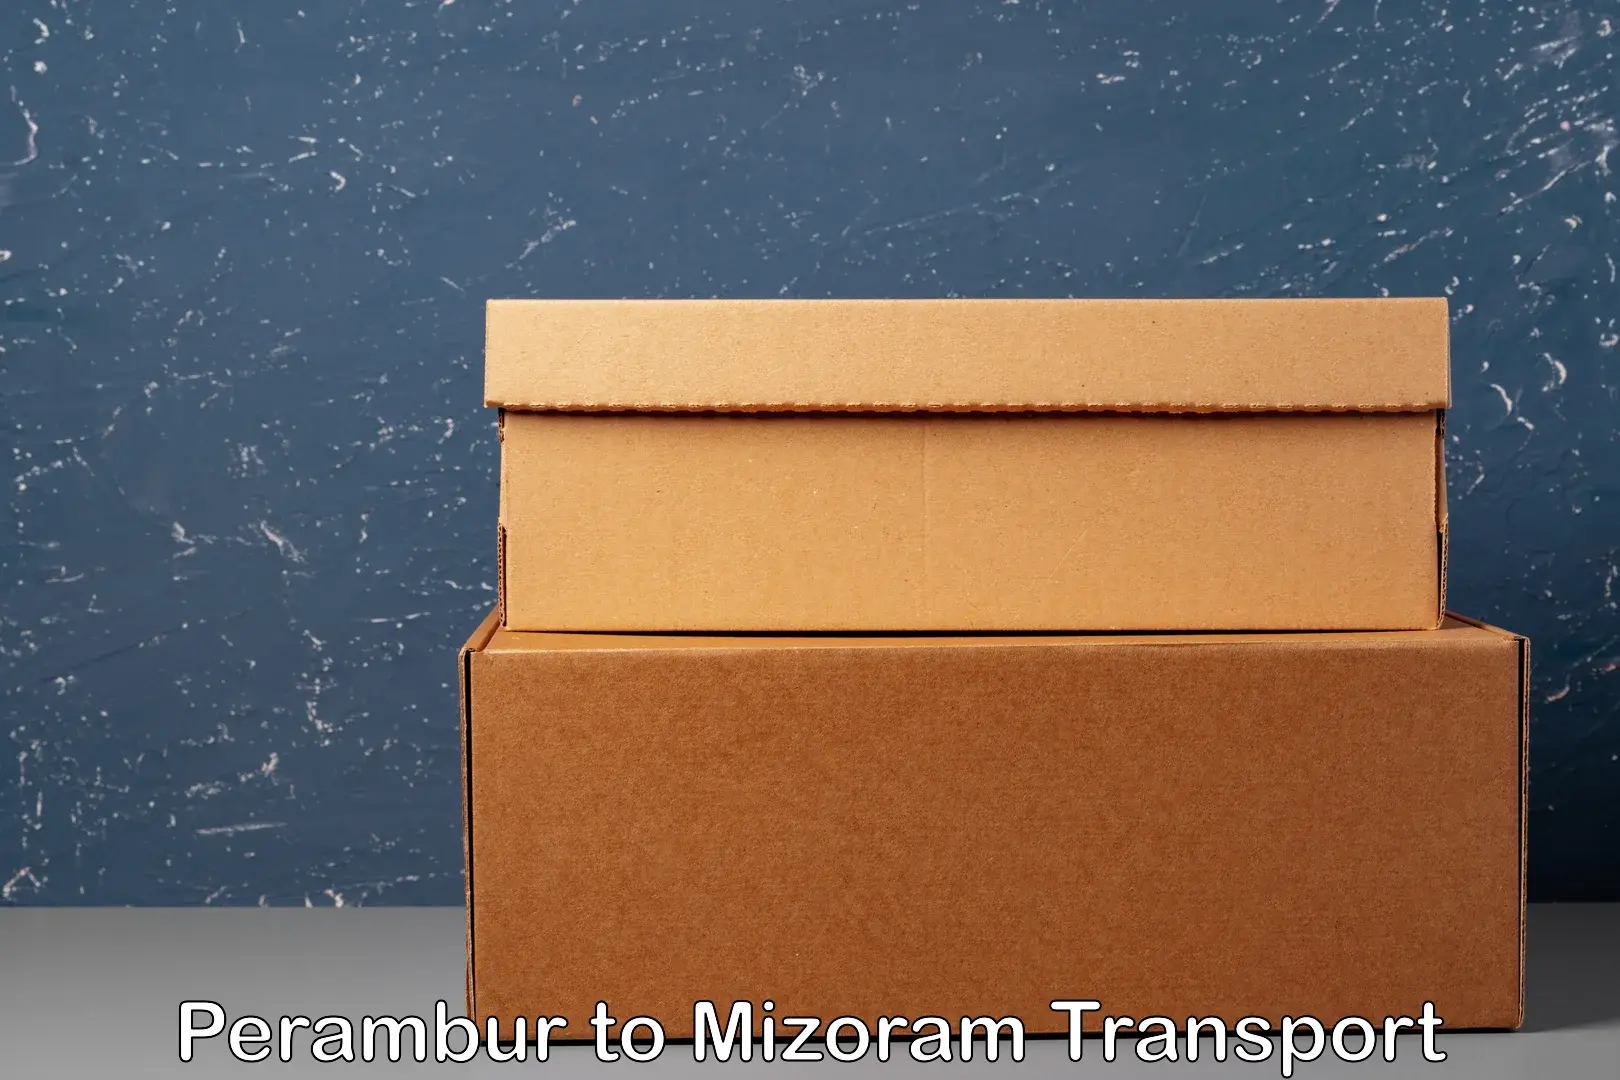 Road transport online services Perambur to Mizoram